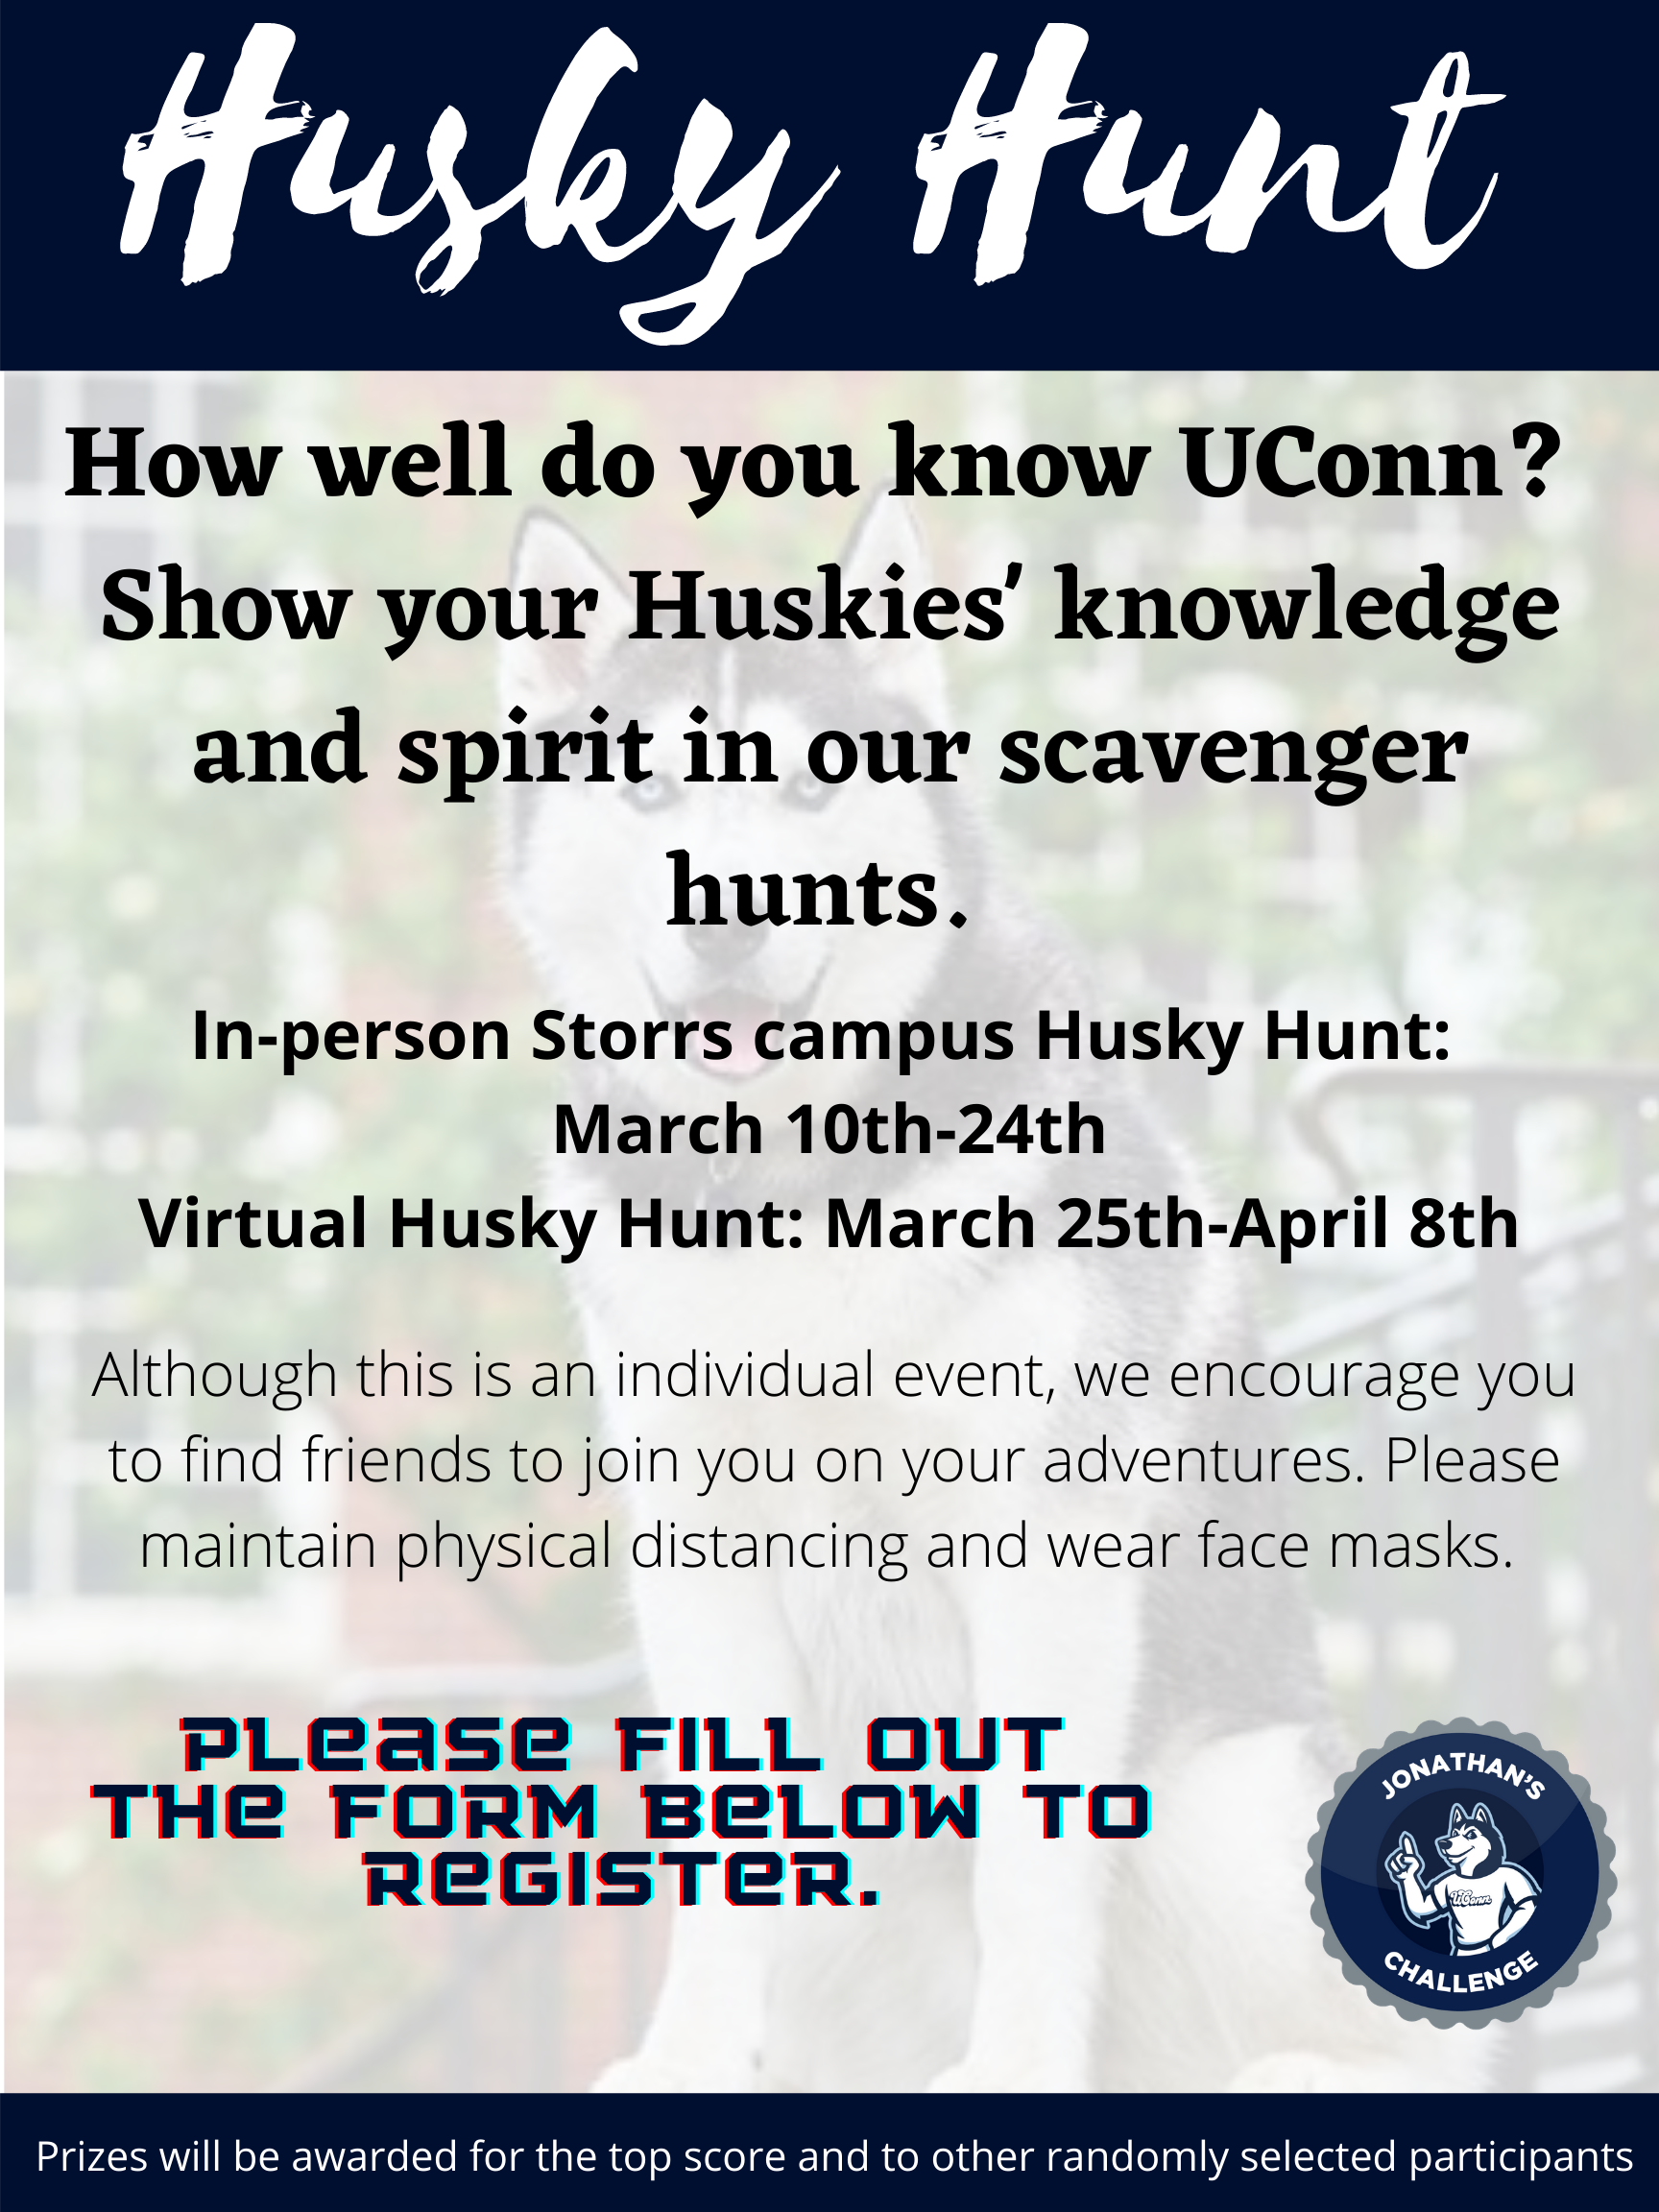 Husky Hunt information sheet